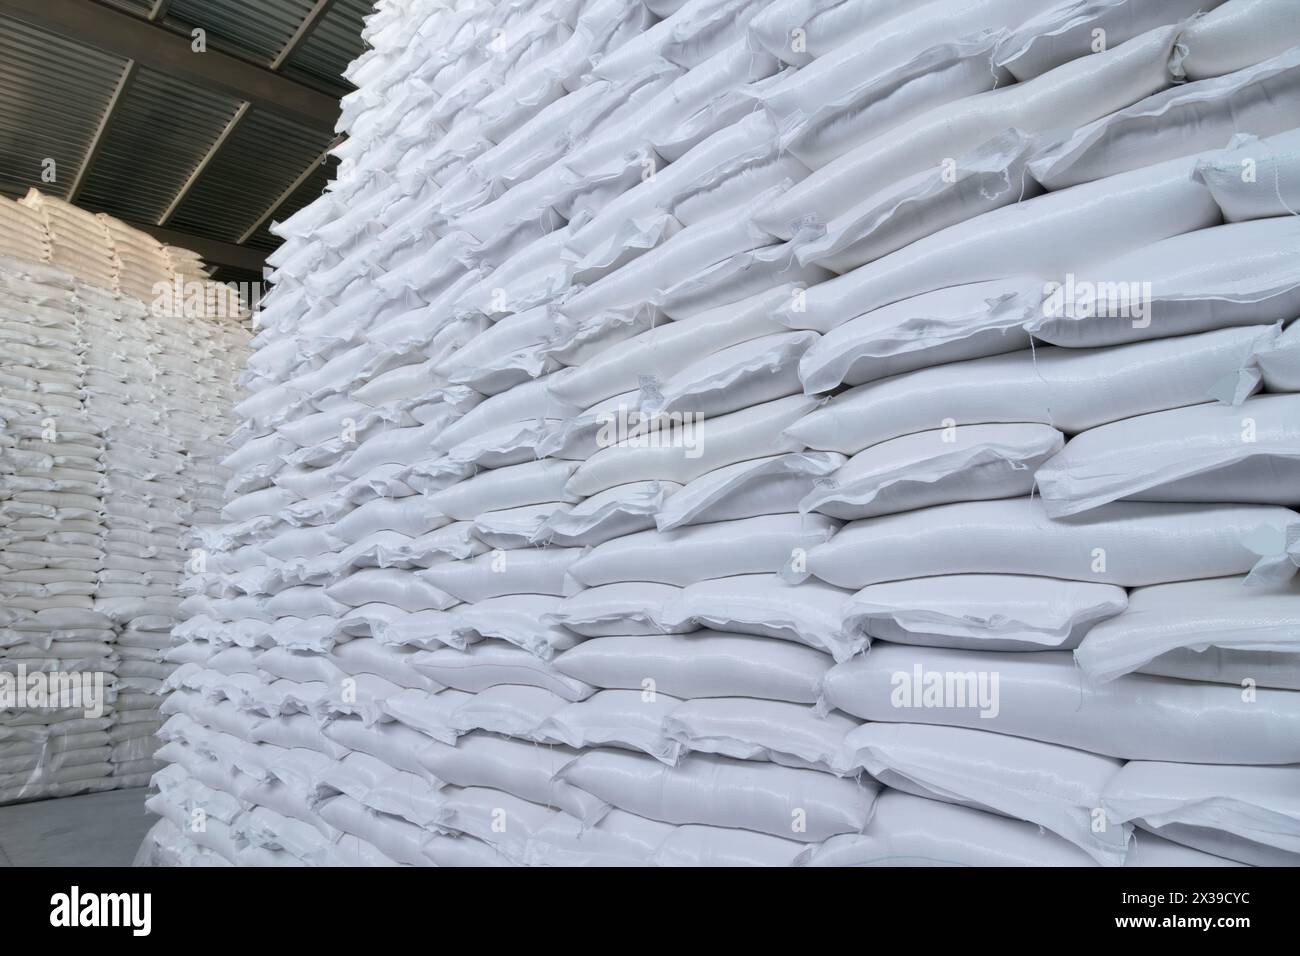 Beaucoup de nouveaux sacs blancs en plastique avec des marchandises sont dans le grand entrepôt Banque D'Images